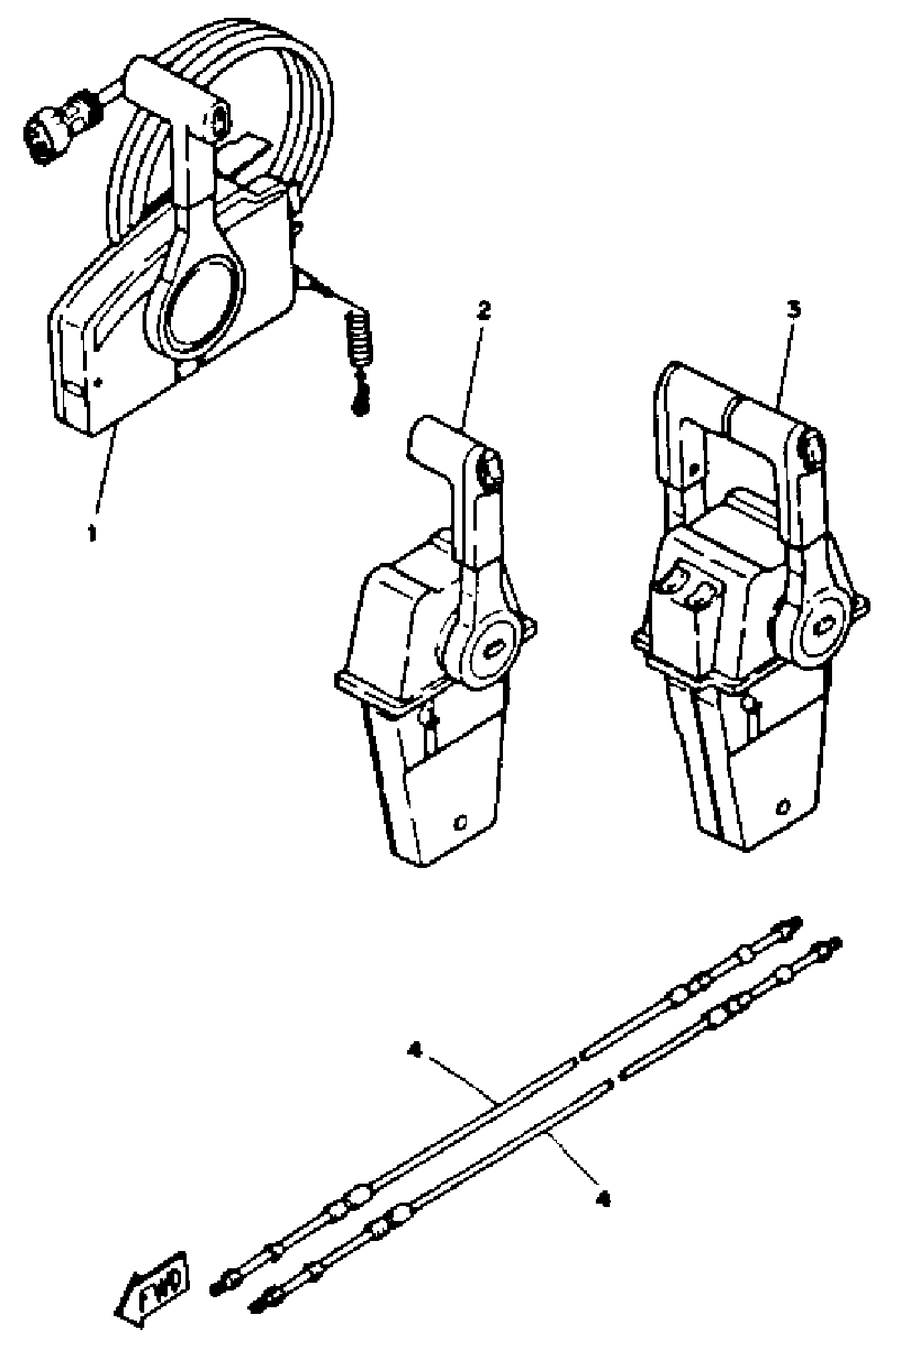 1993 L150TXRR REMOTE CONTROL CABLES